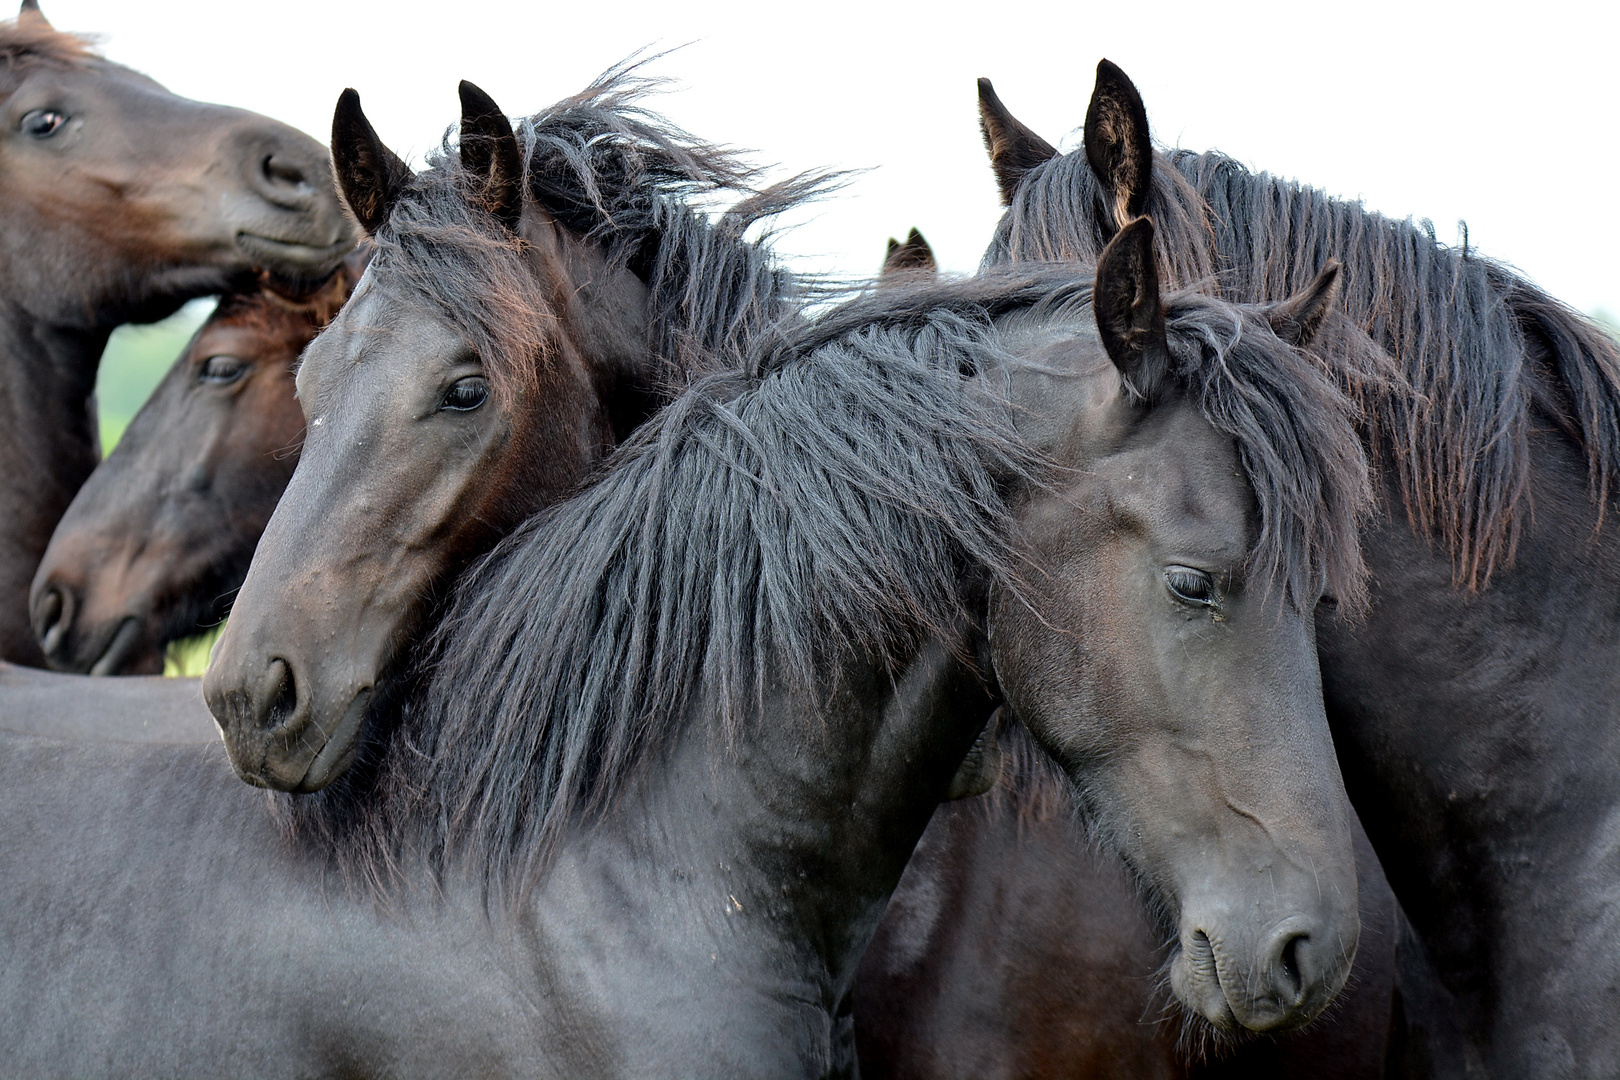 Frisian Horses